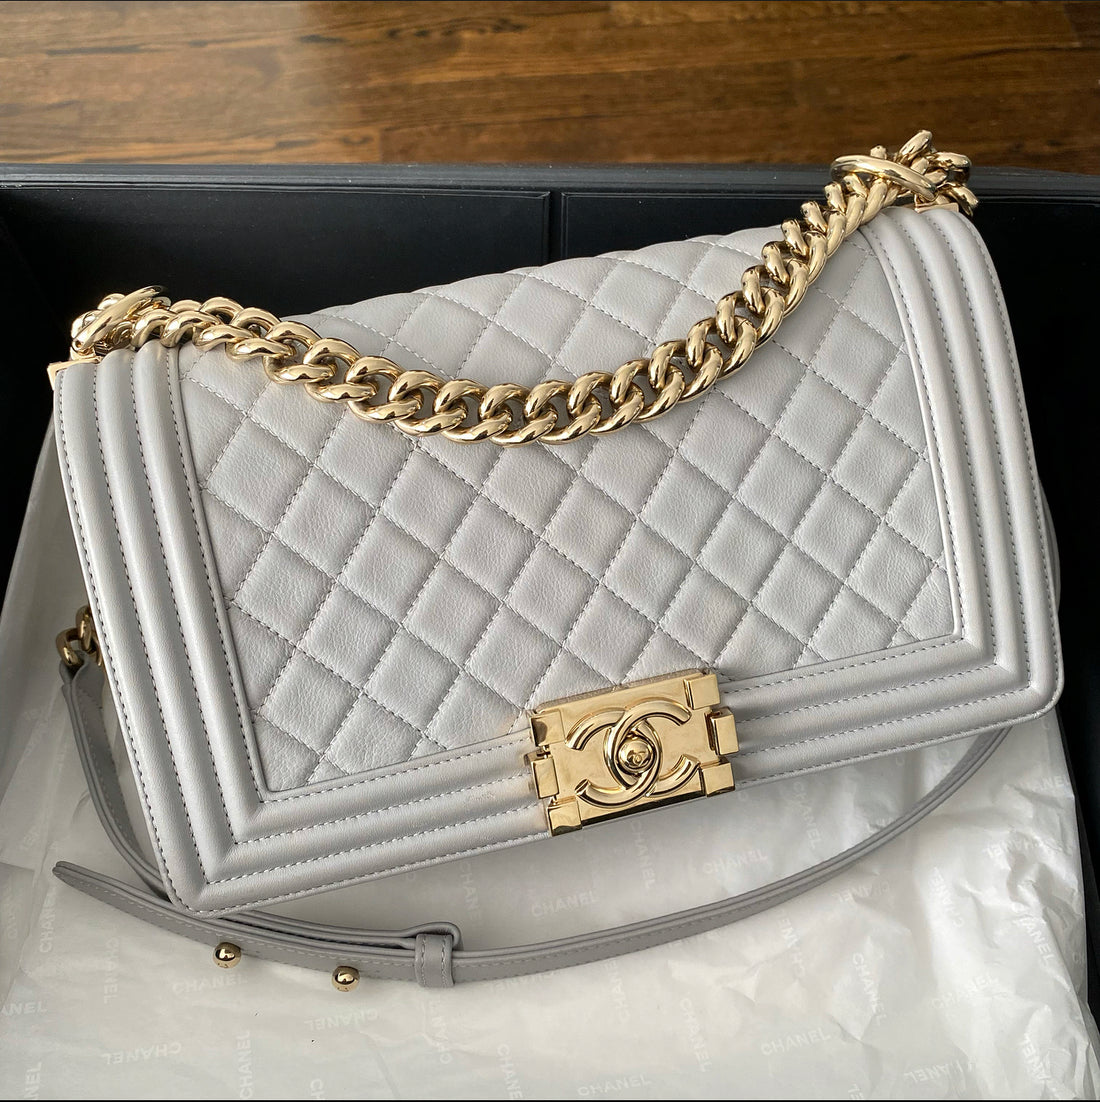 Chanel Light Grey Medium Quilted Le Boy Bag – I MISS YOU VINTAGE